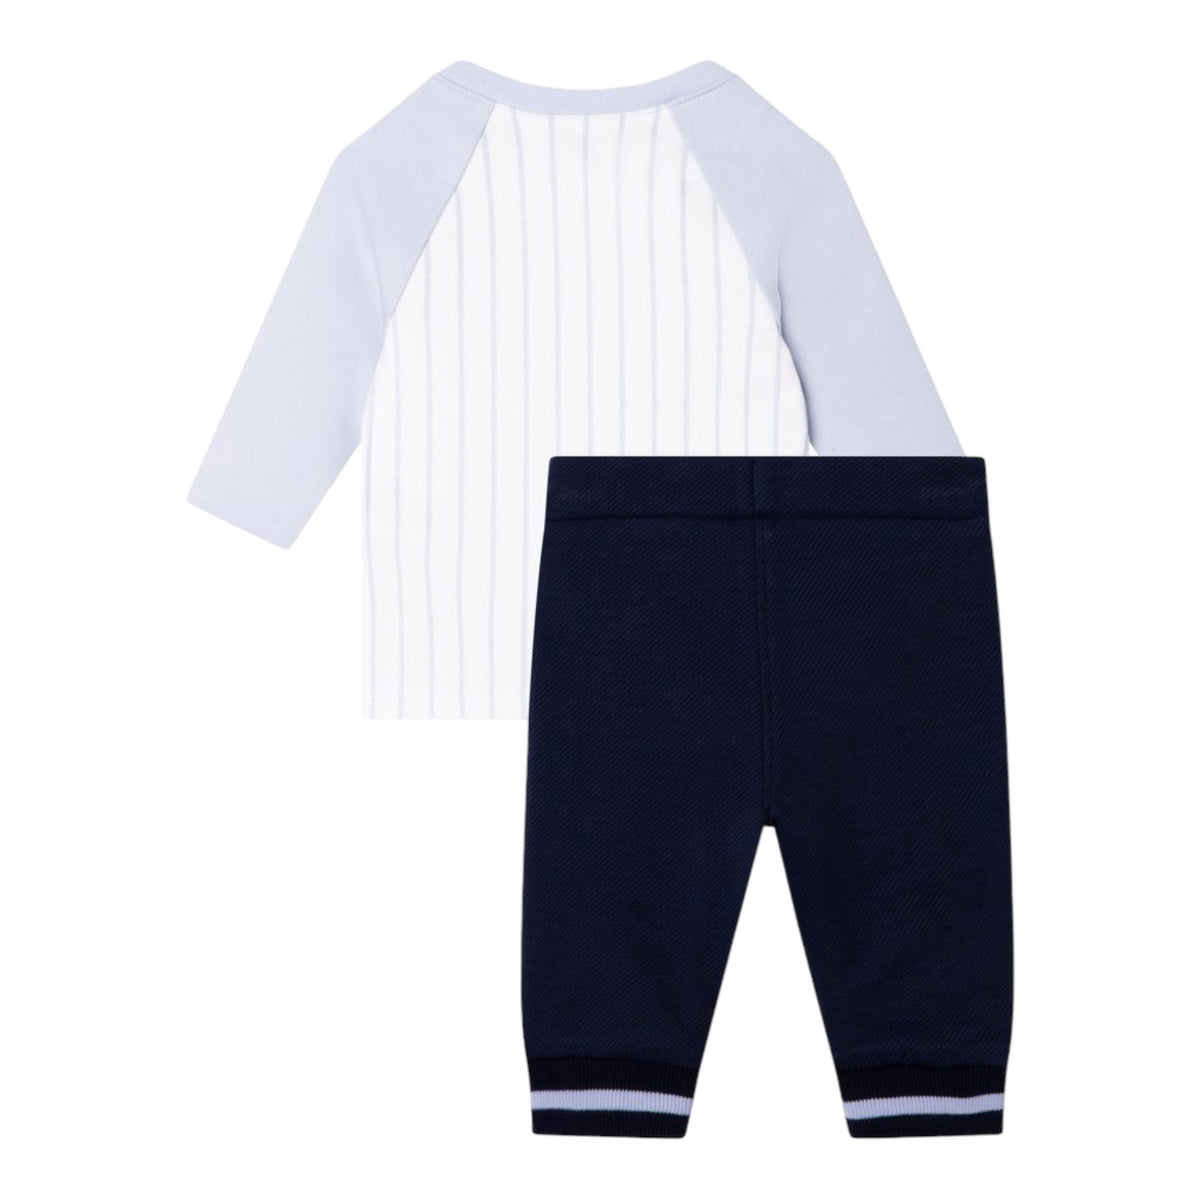 Hugo Boss Kids Infant's 'Little Boss' Shirt and Pant Set